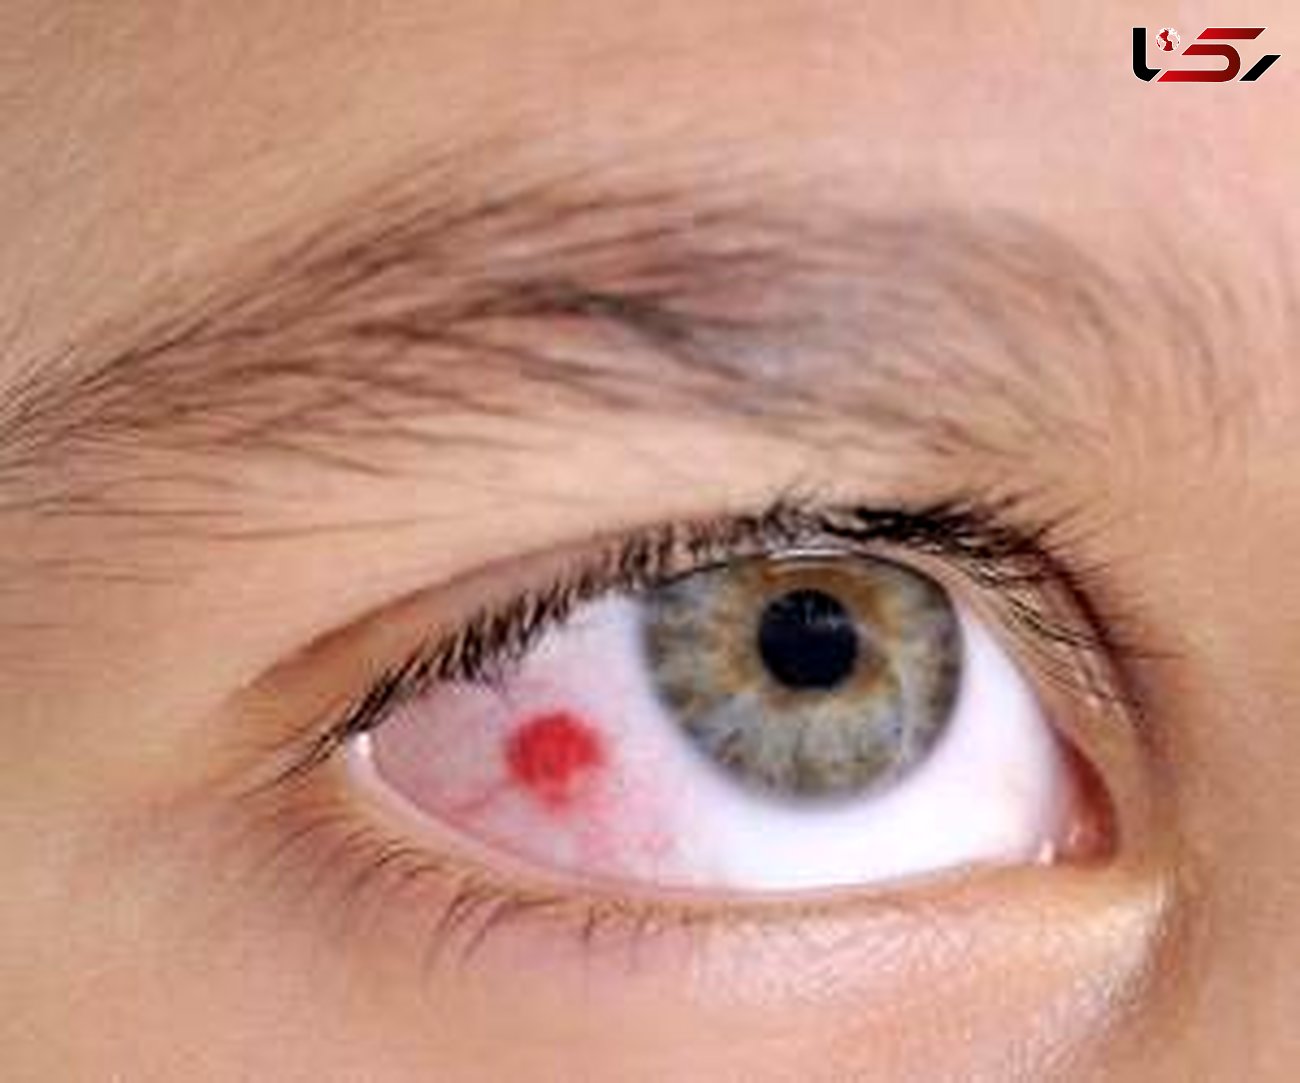  لکه قرمز داخل چشم خبر از چه بیماری می دهد؟